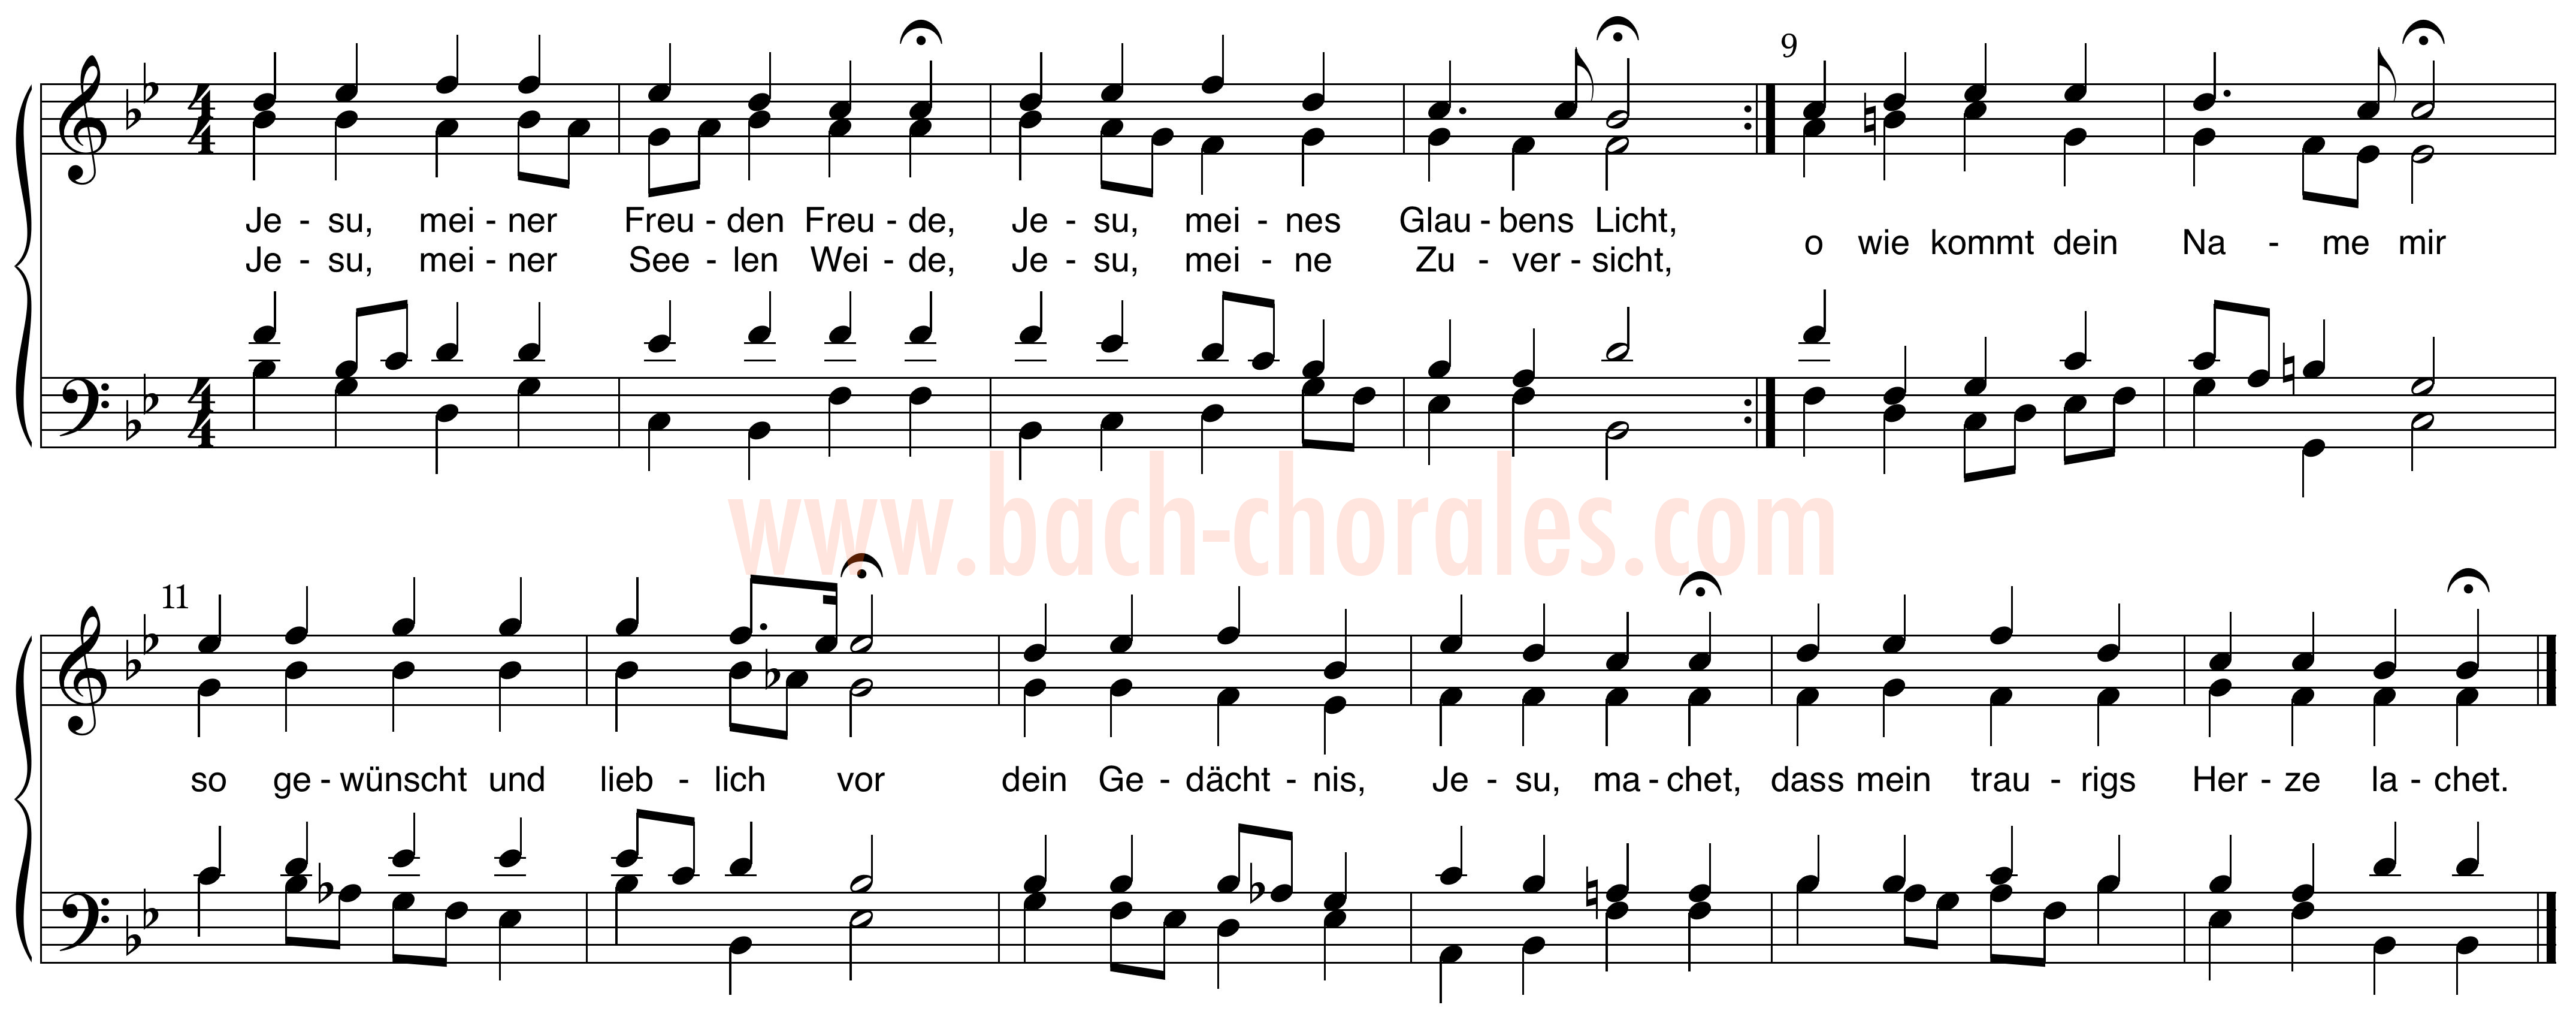 notenbeeld BWV 360 op https://www.bach-chorales.com/